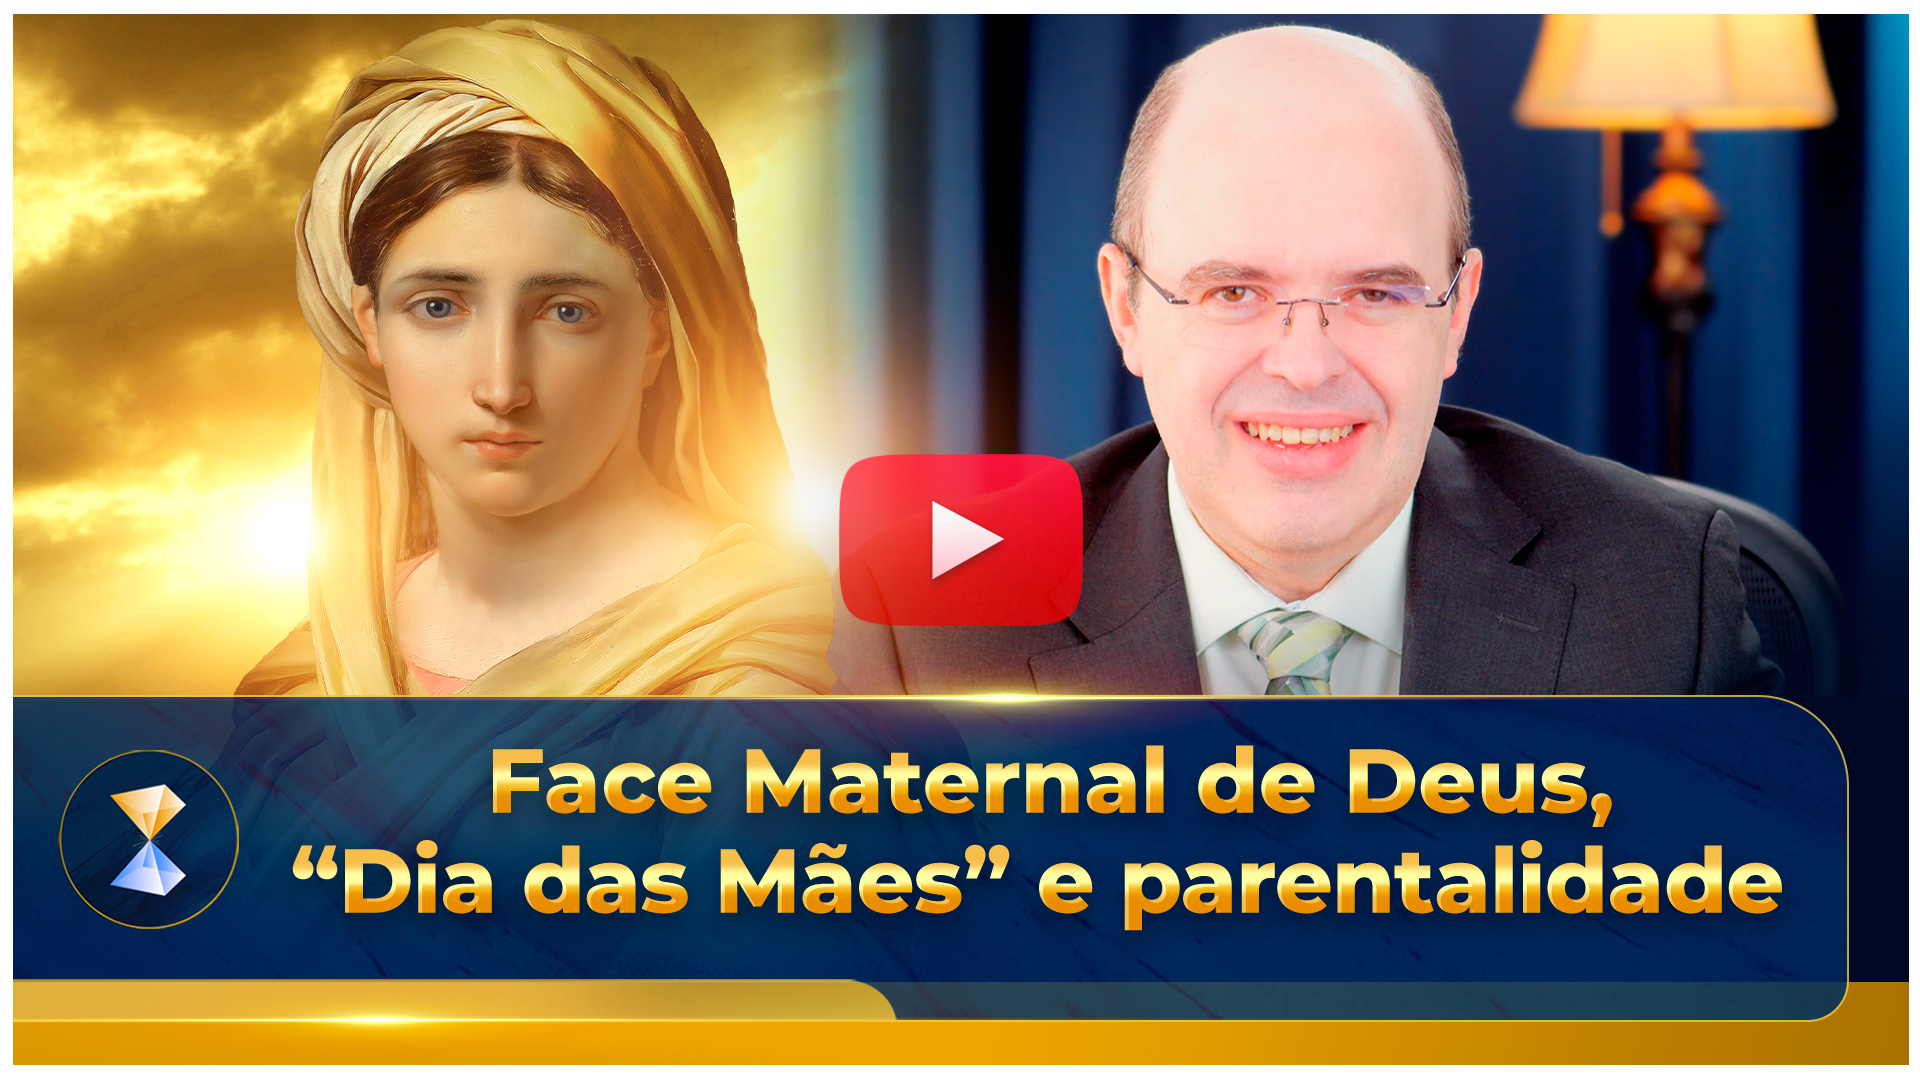 Face Maternal de Deus, "Dia das Mães" e parentalidade